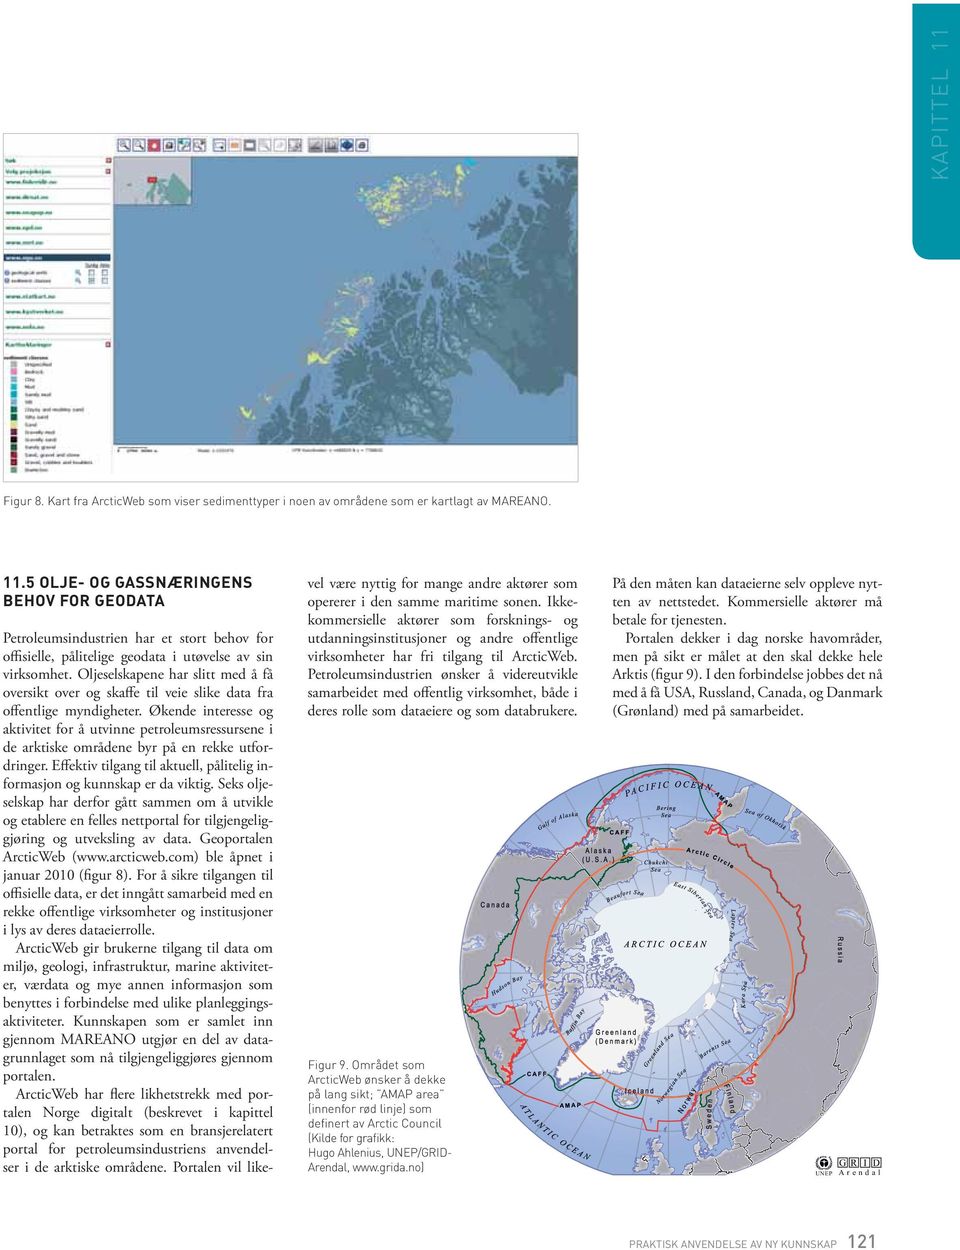 Økende interesse og aktivitet for å utvinne petroleumsressursene i de arktiske områdene byr på en rekke utfordringer. Eﬀektiv tilgang til aktuell, pålitelig informasjon og kunnskap er da viktig.